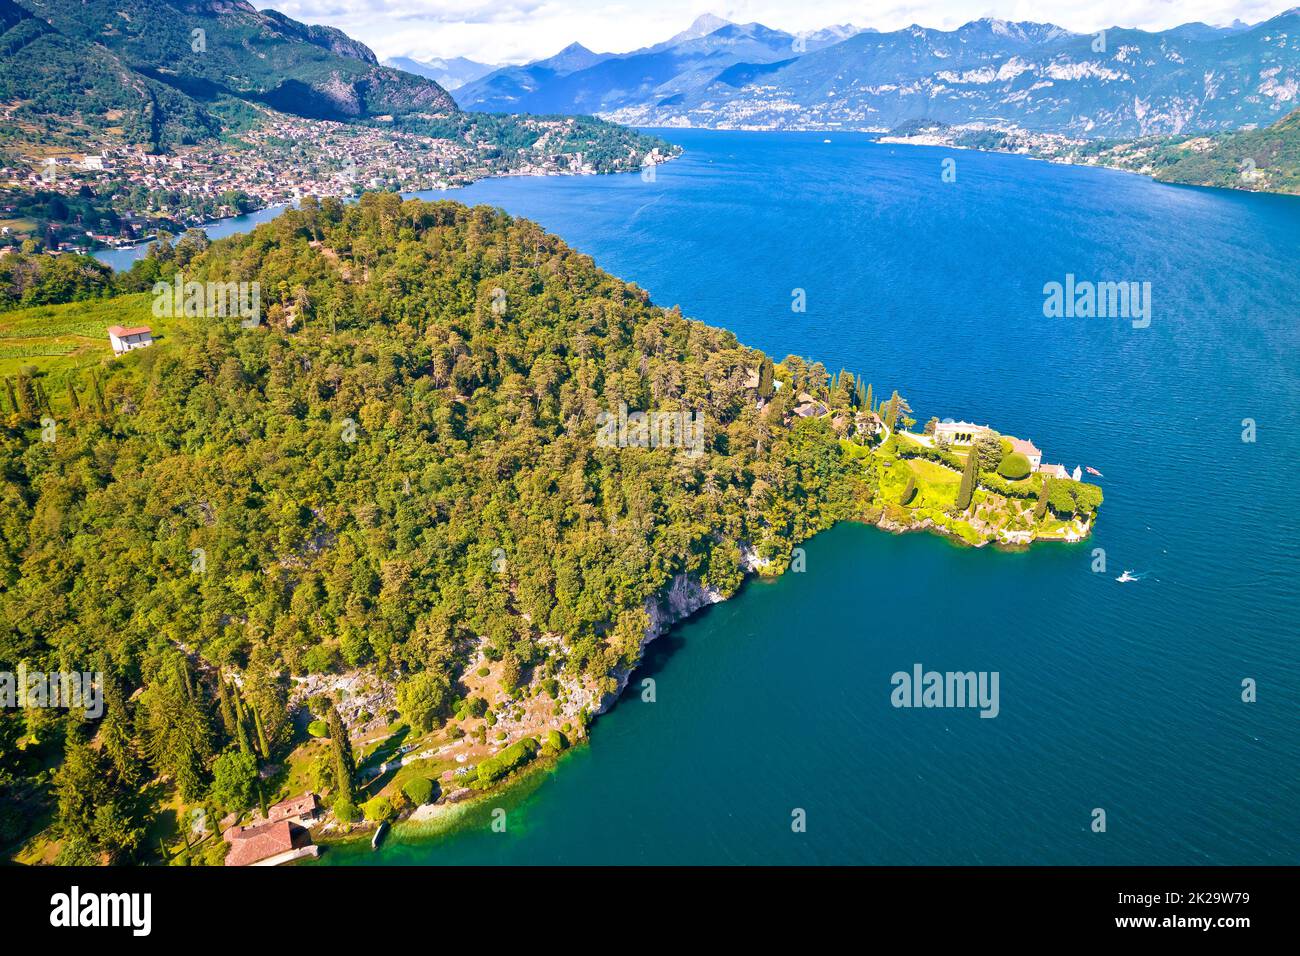 Villa Balbianello e Lago di Como vista aerea, comune di Lenno Foto Stock